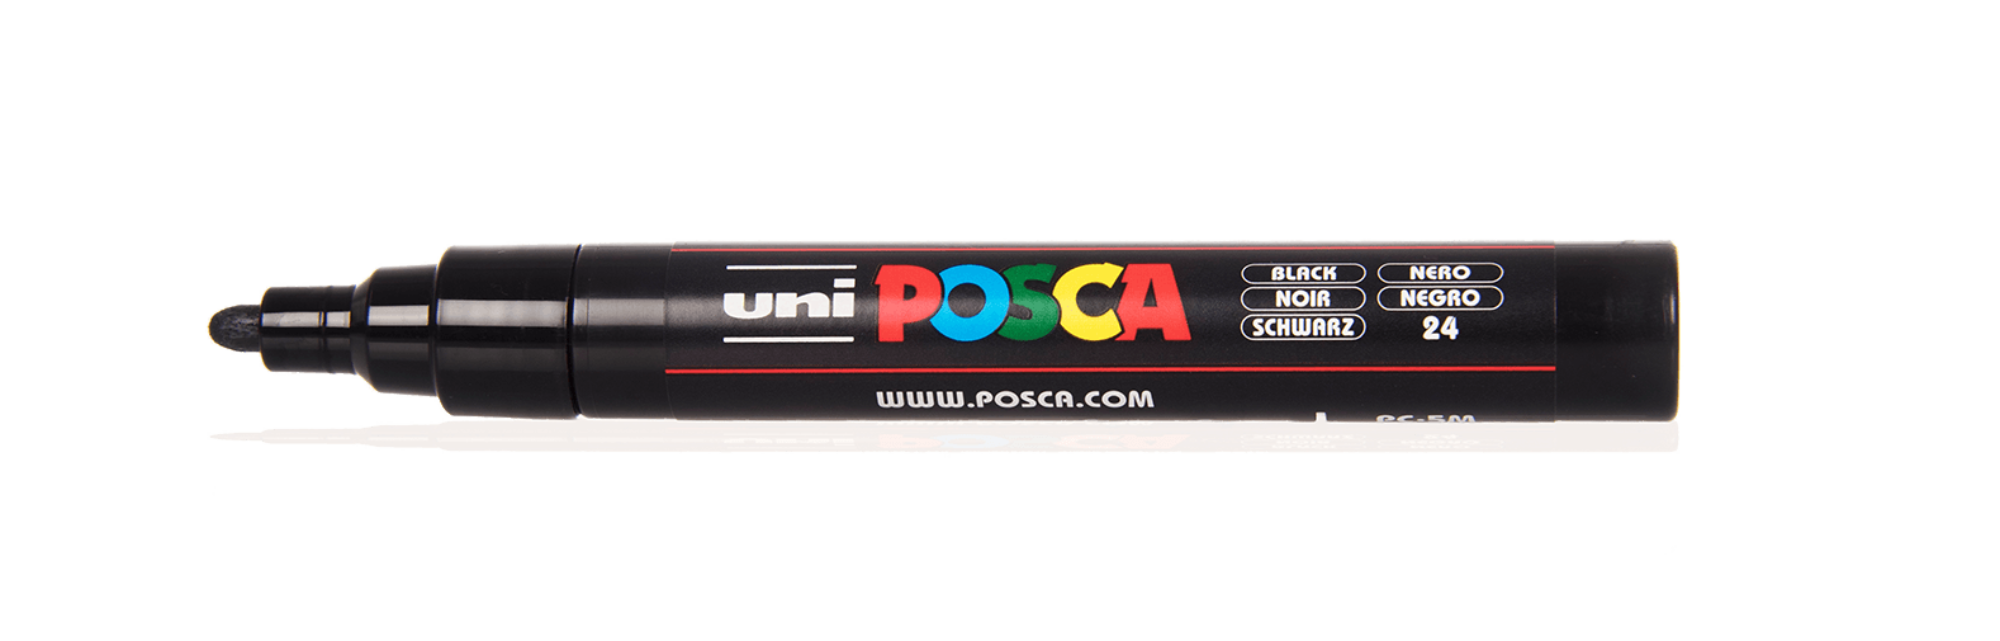 posca-pc-5m-1-2000x0-c-default.png